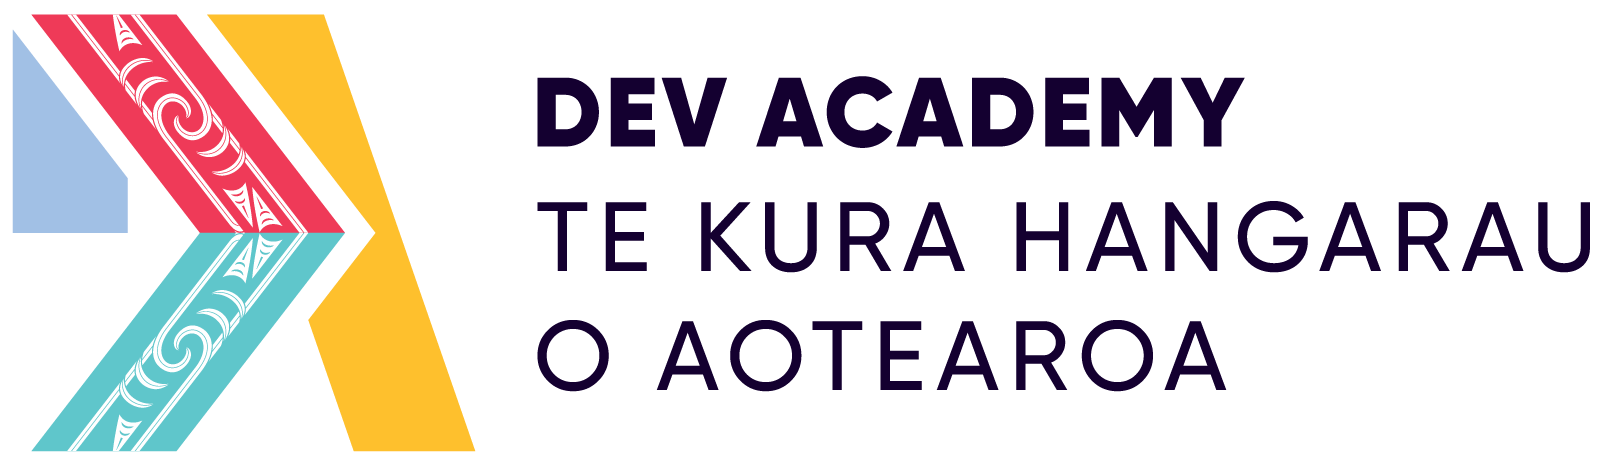 Dev Academy Aotearoa